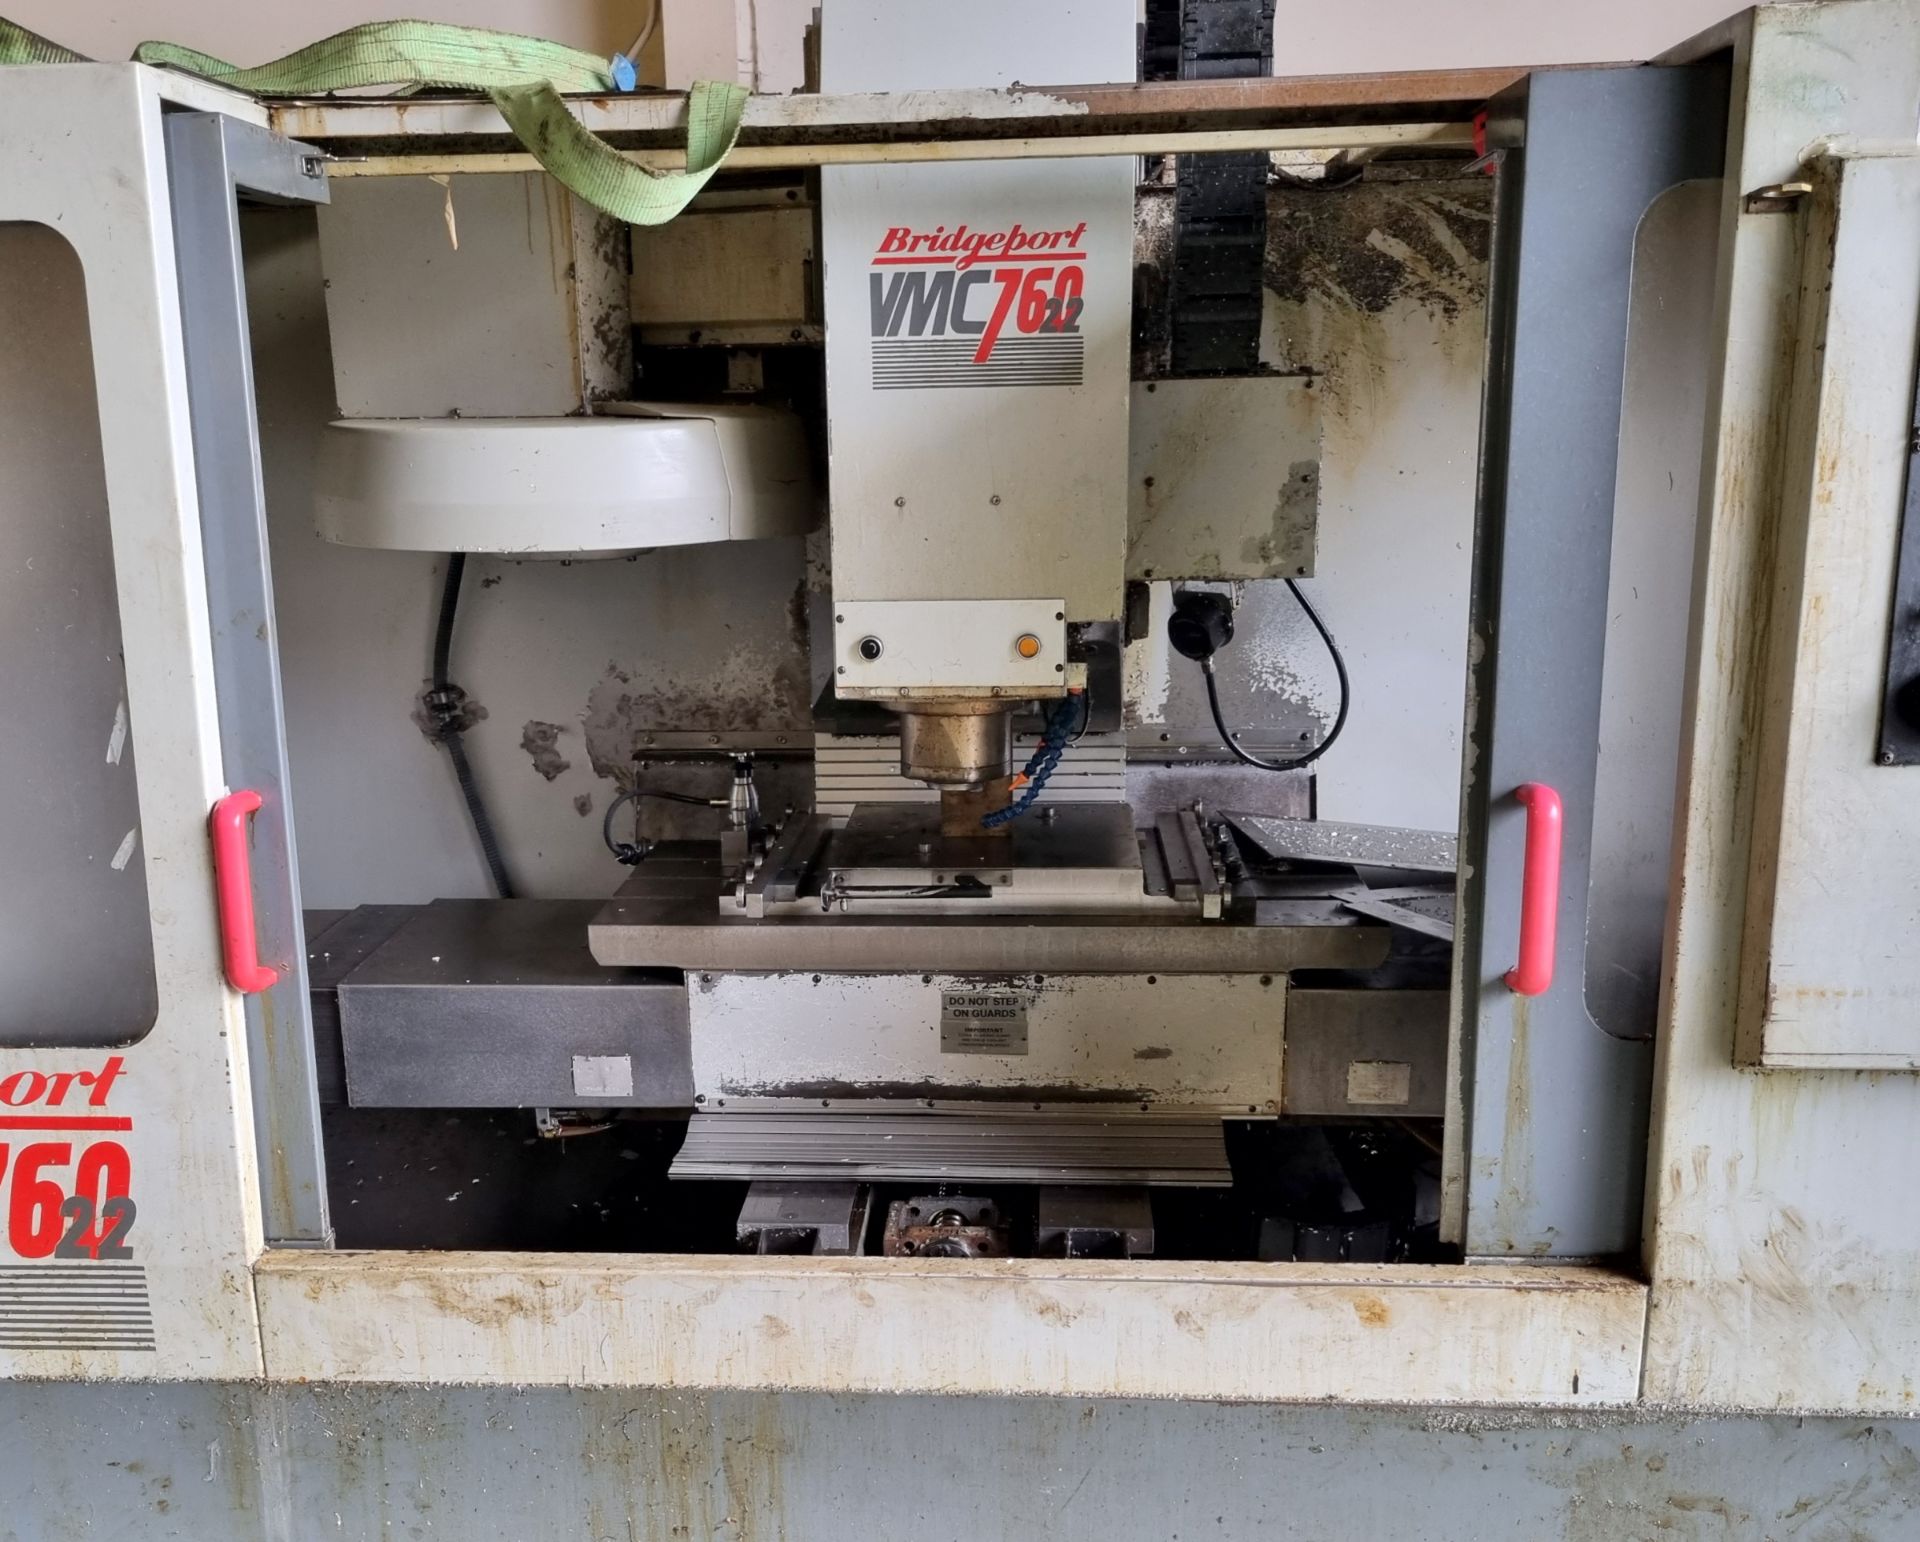 Bridgeport VMC 760 CNC vertical machining centre with work bench and swarf skip - Serial No: 20363 - Bild 12 aus 27